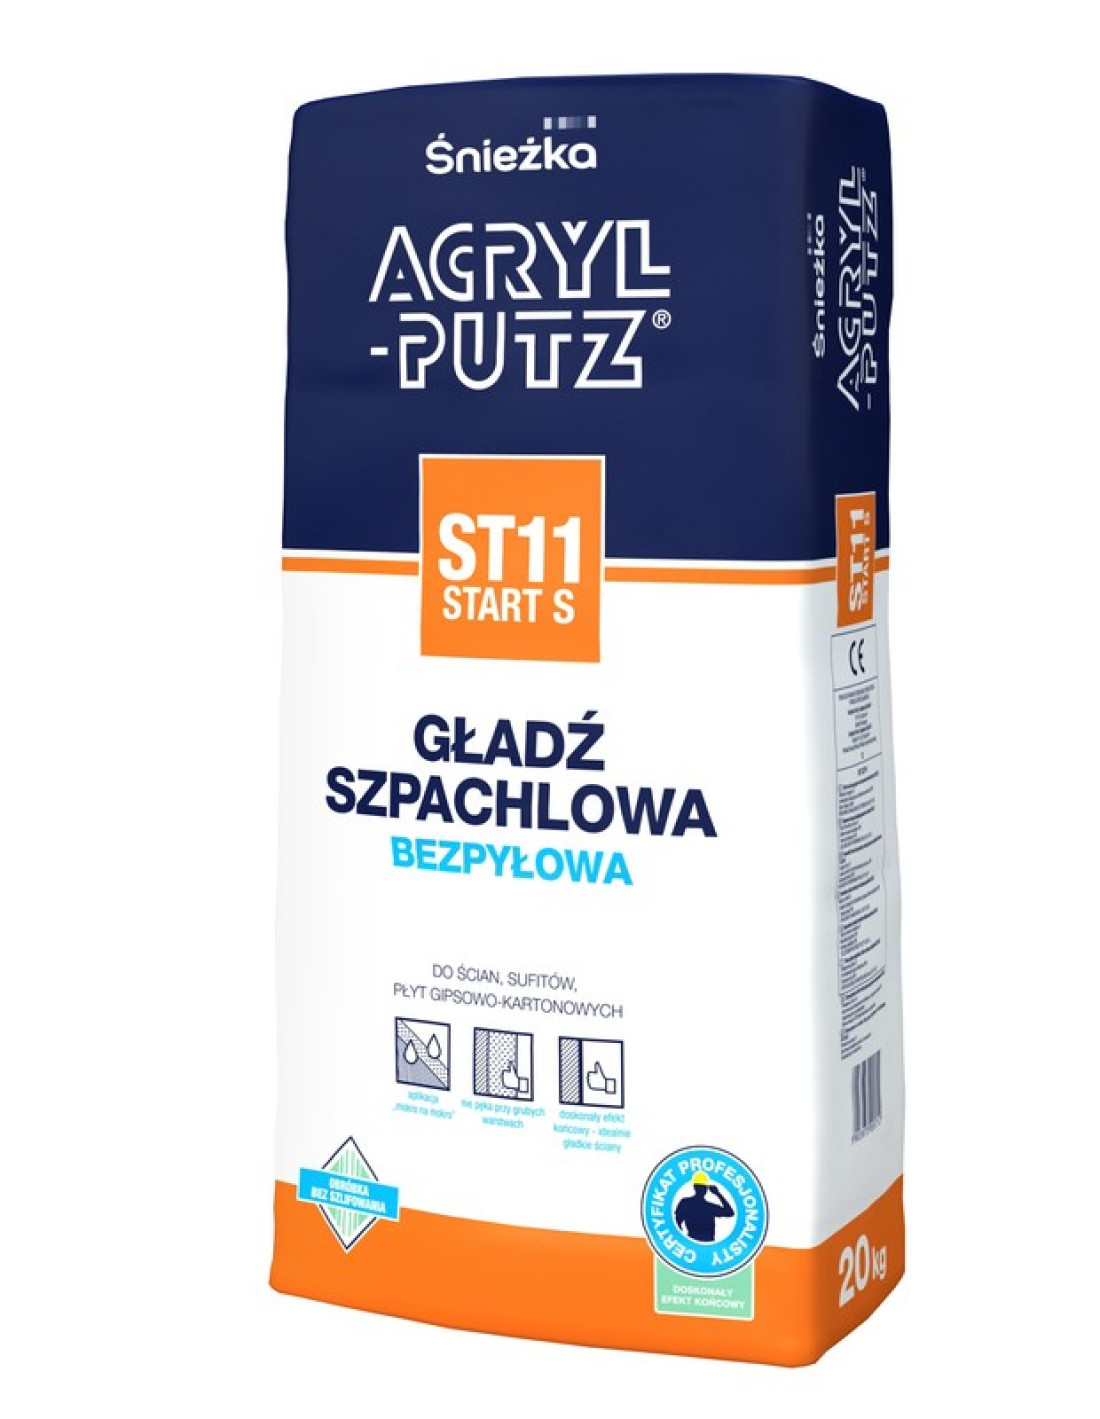 Nowe opakowanie gładzi szpachlowej ACRYL-PUTZ® ST11 START S